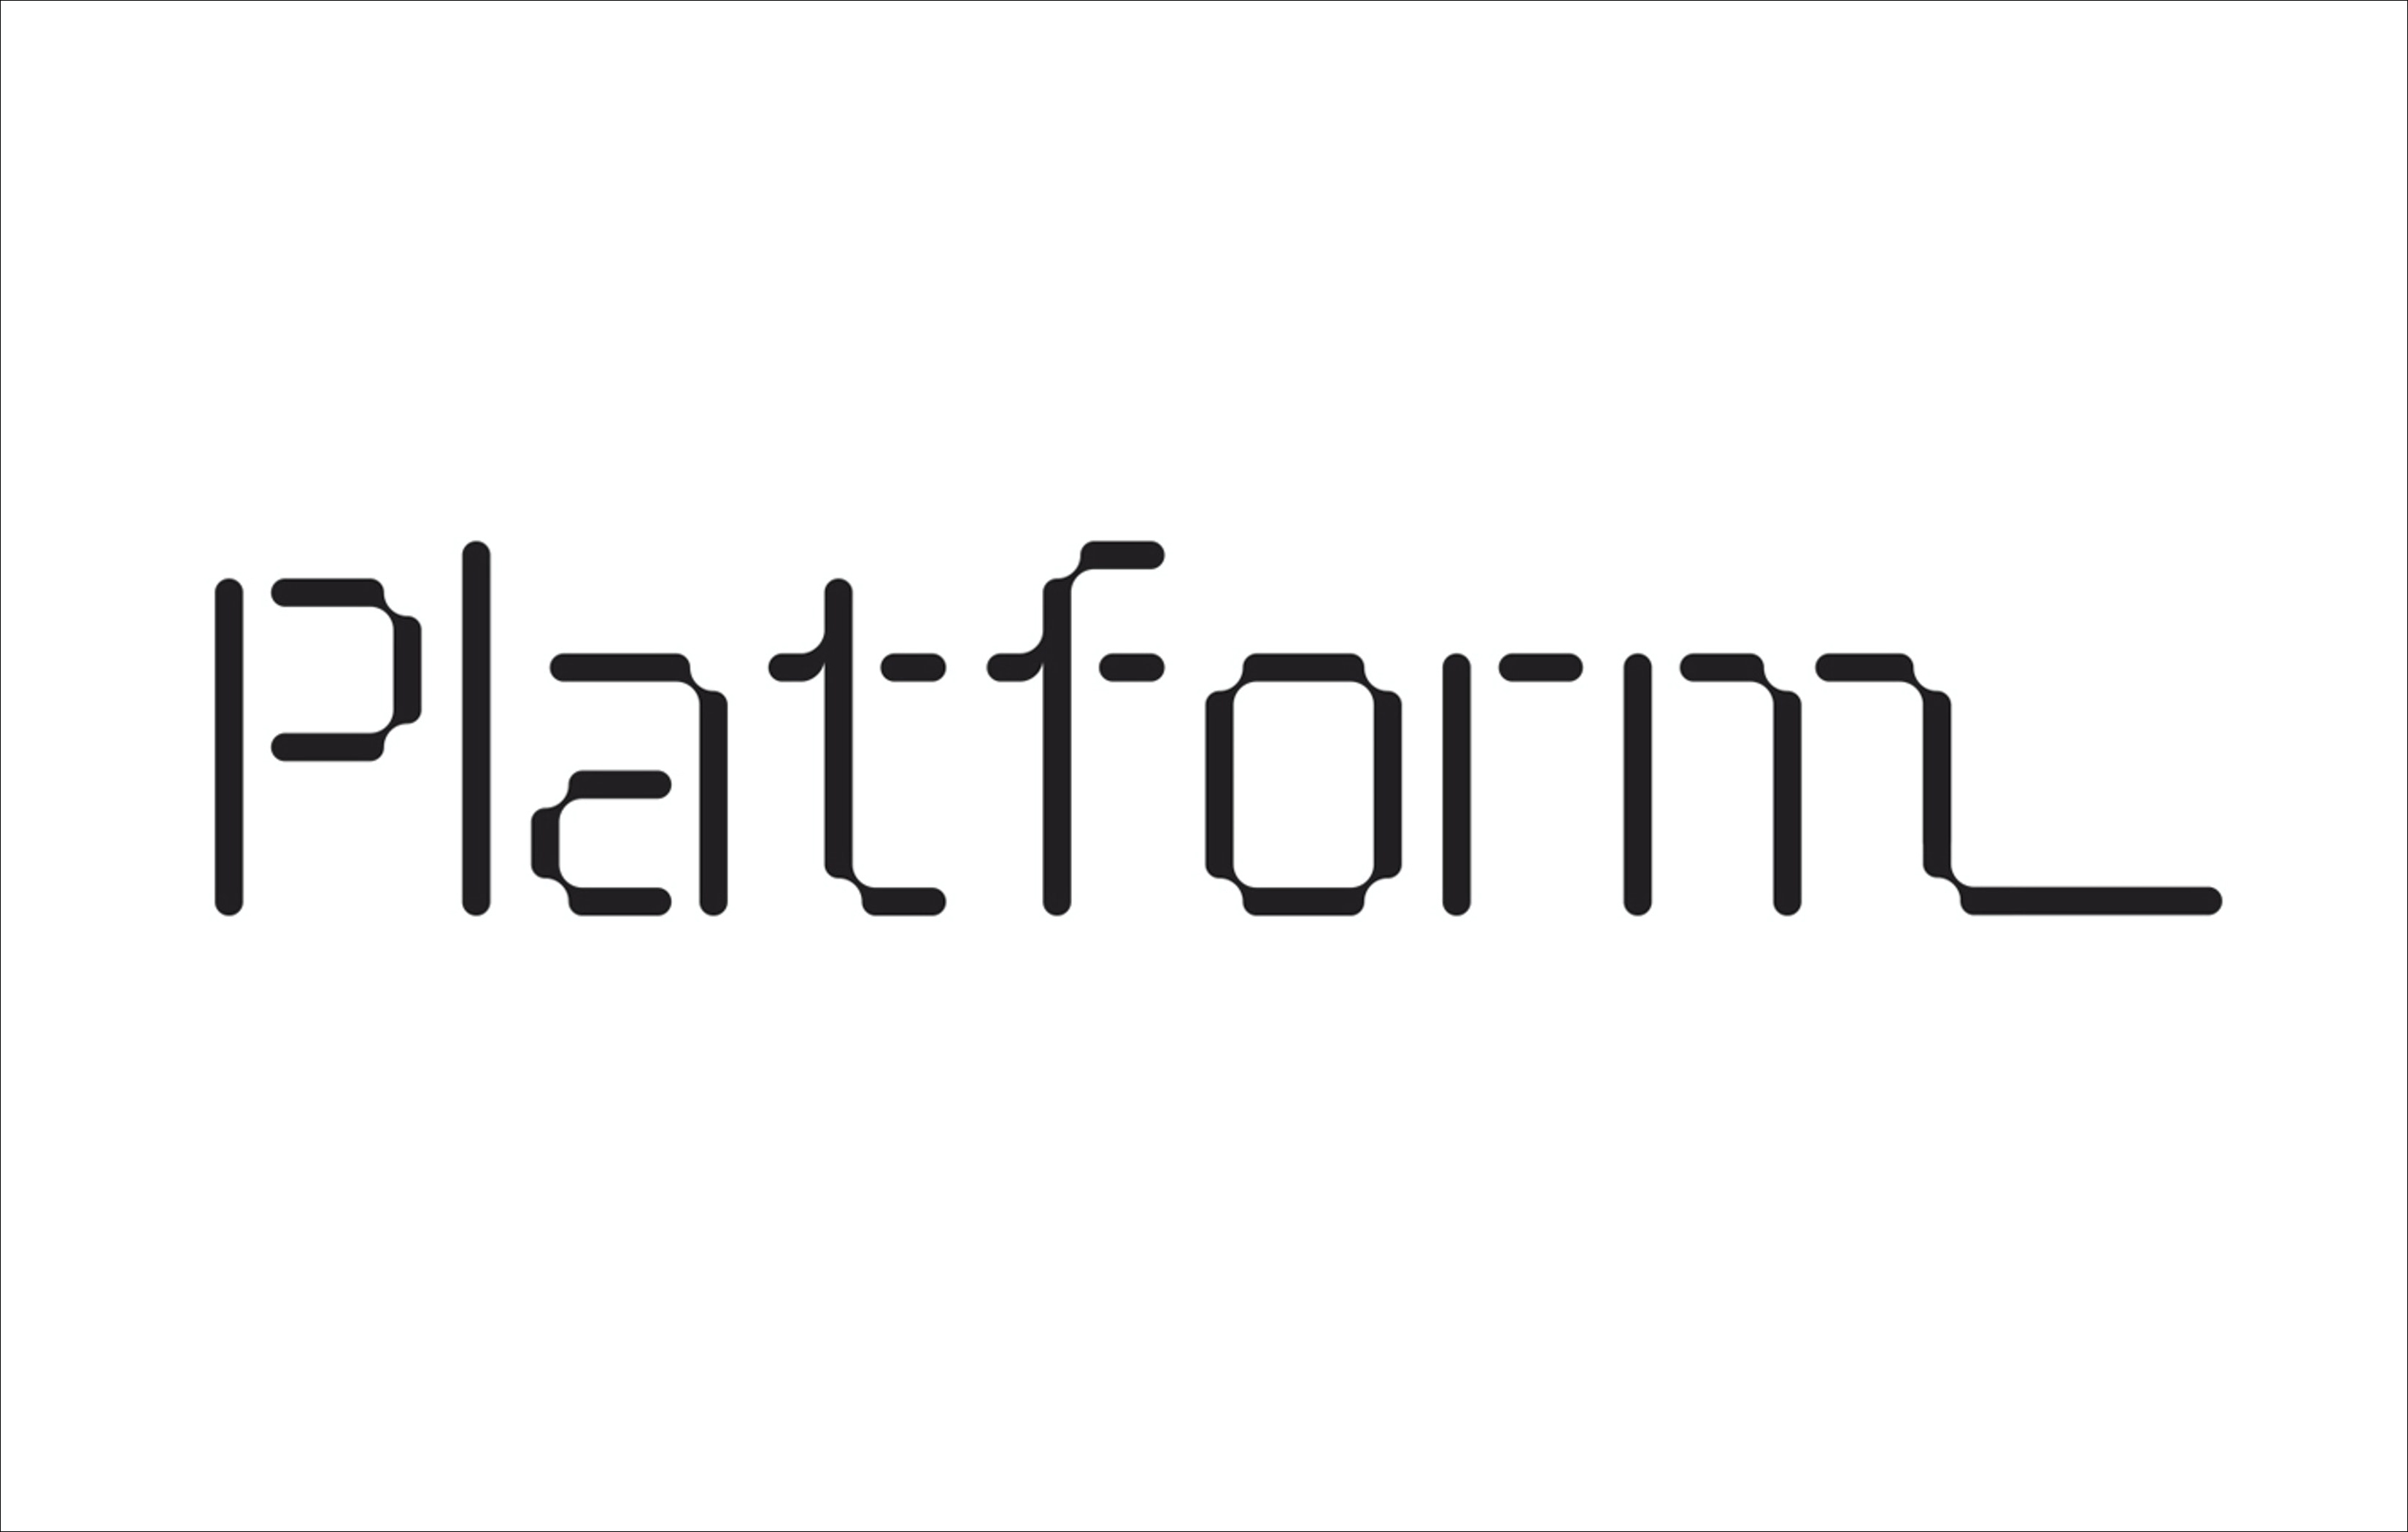 Logotype designed by Pentagram for not-for-profit organisation Platform